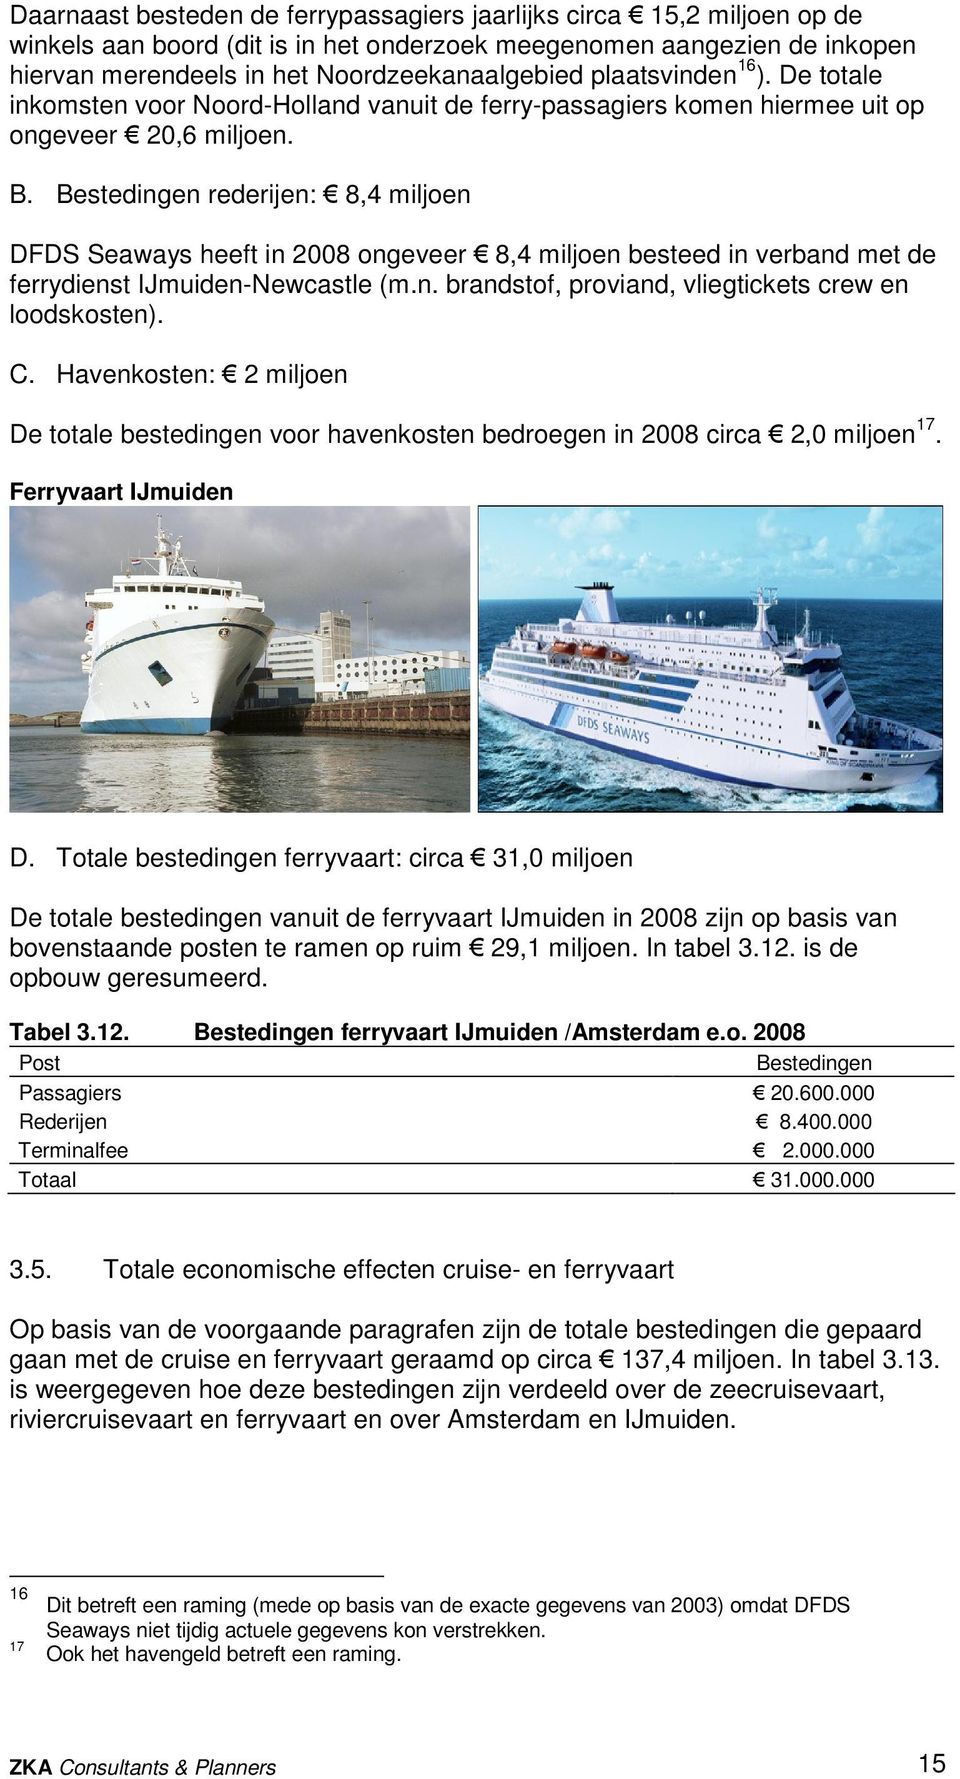 Bestedingen rederijen: 8,4 miljoen DFDS Seaways heeft in 2008 ongeveer 8,4 miljoen besteed in verband met de ferrydienst IJmuiden-Newcastle (m.n. brandstof, proviand, vliegtickets crew en loodskosten).